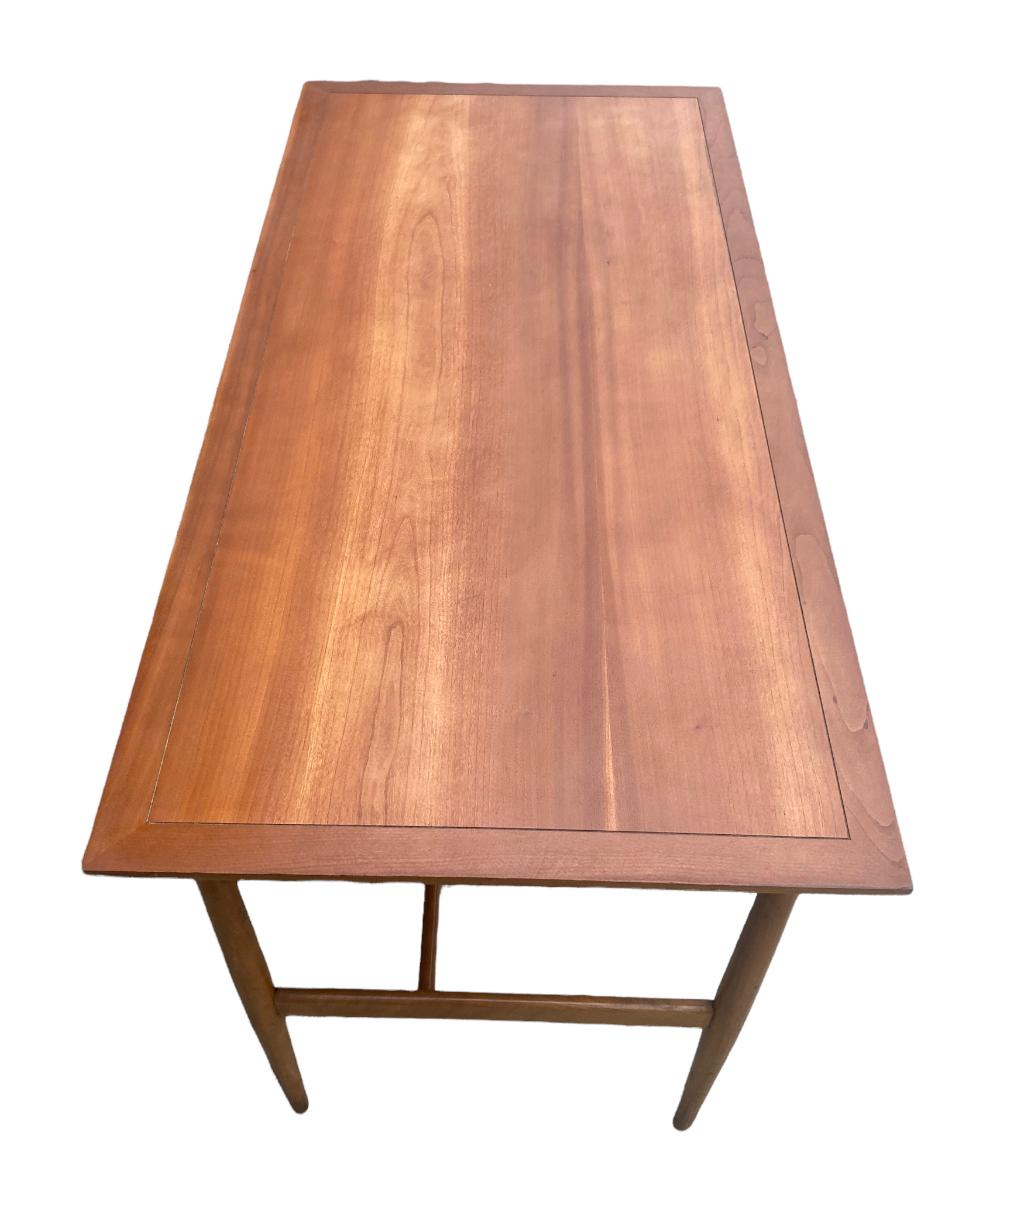 Elegant Drexel Sun Coast Midcentury Modern Desk in Walnut by Kipp Stewart 1